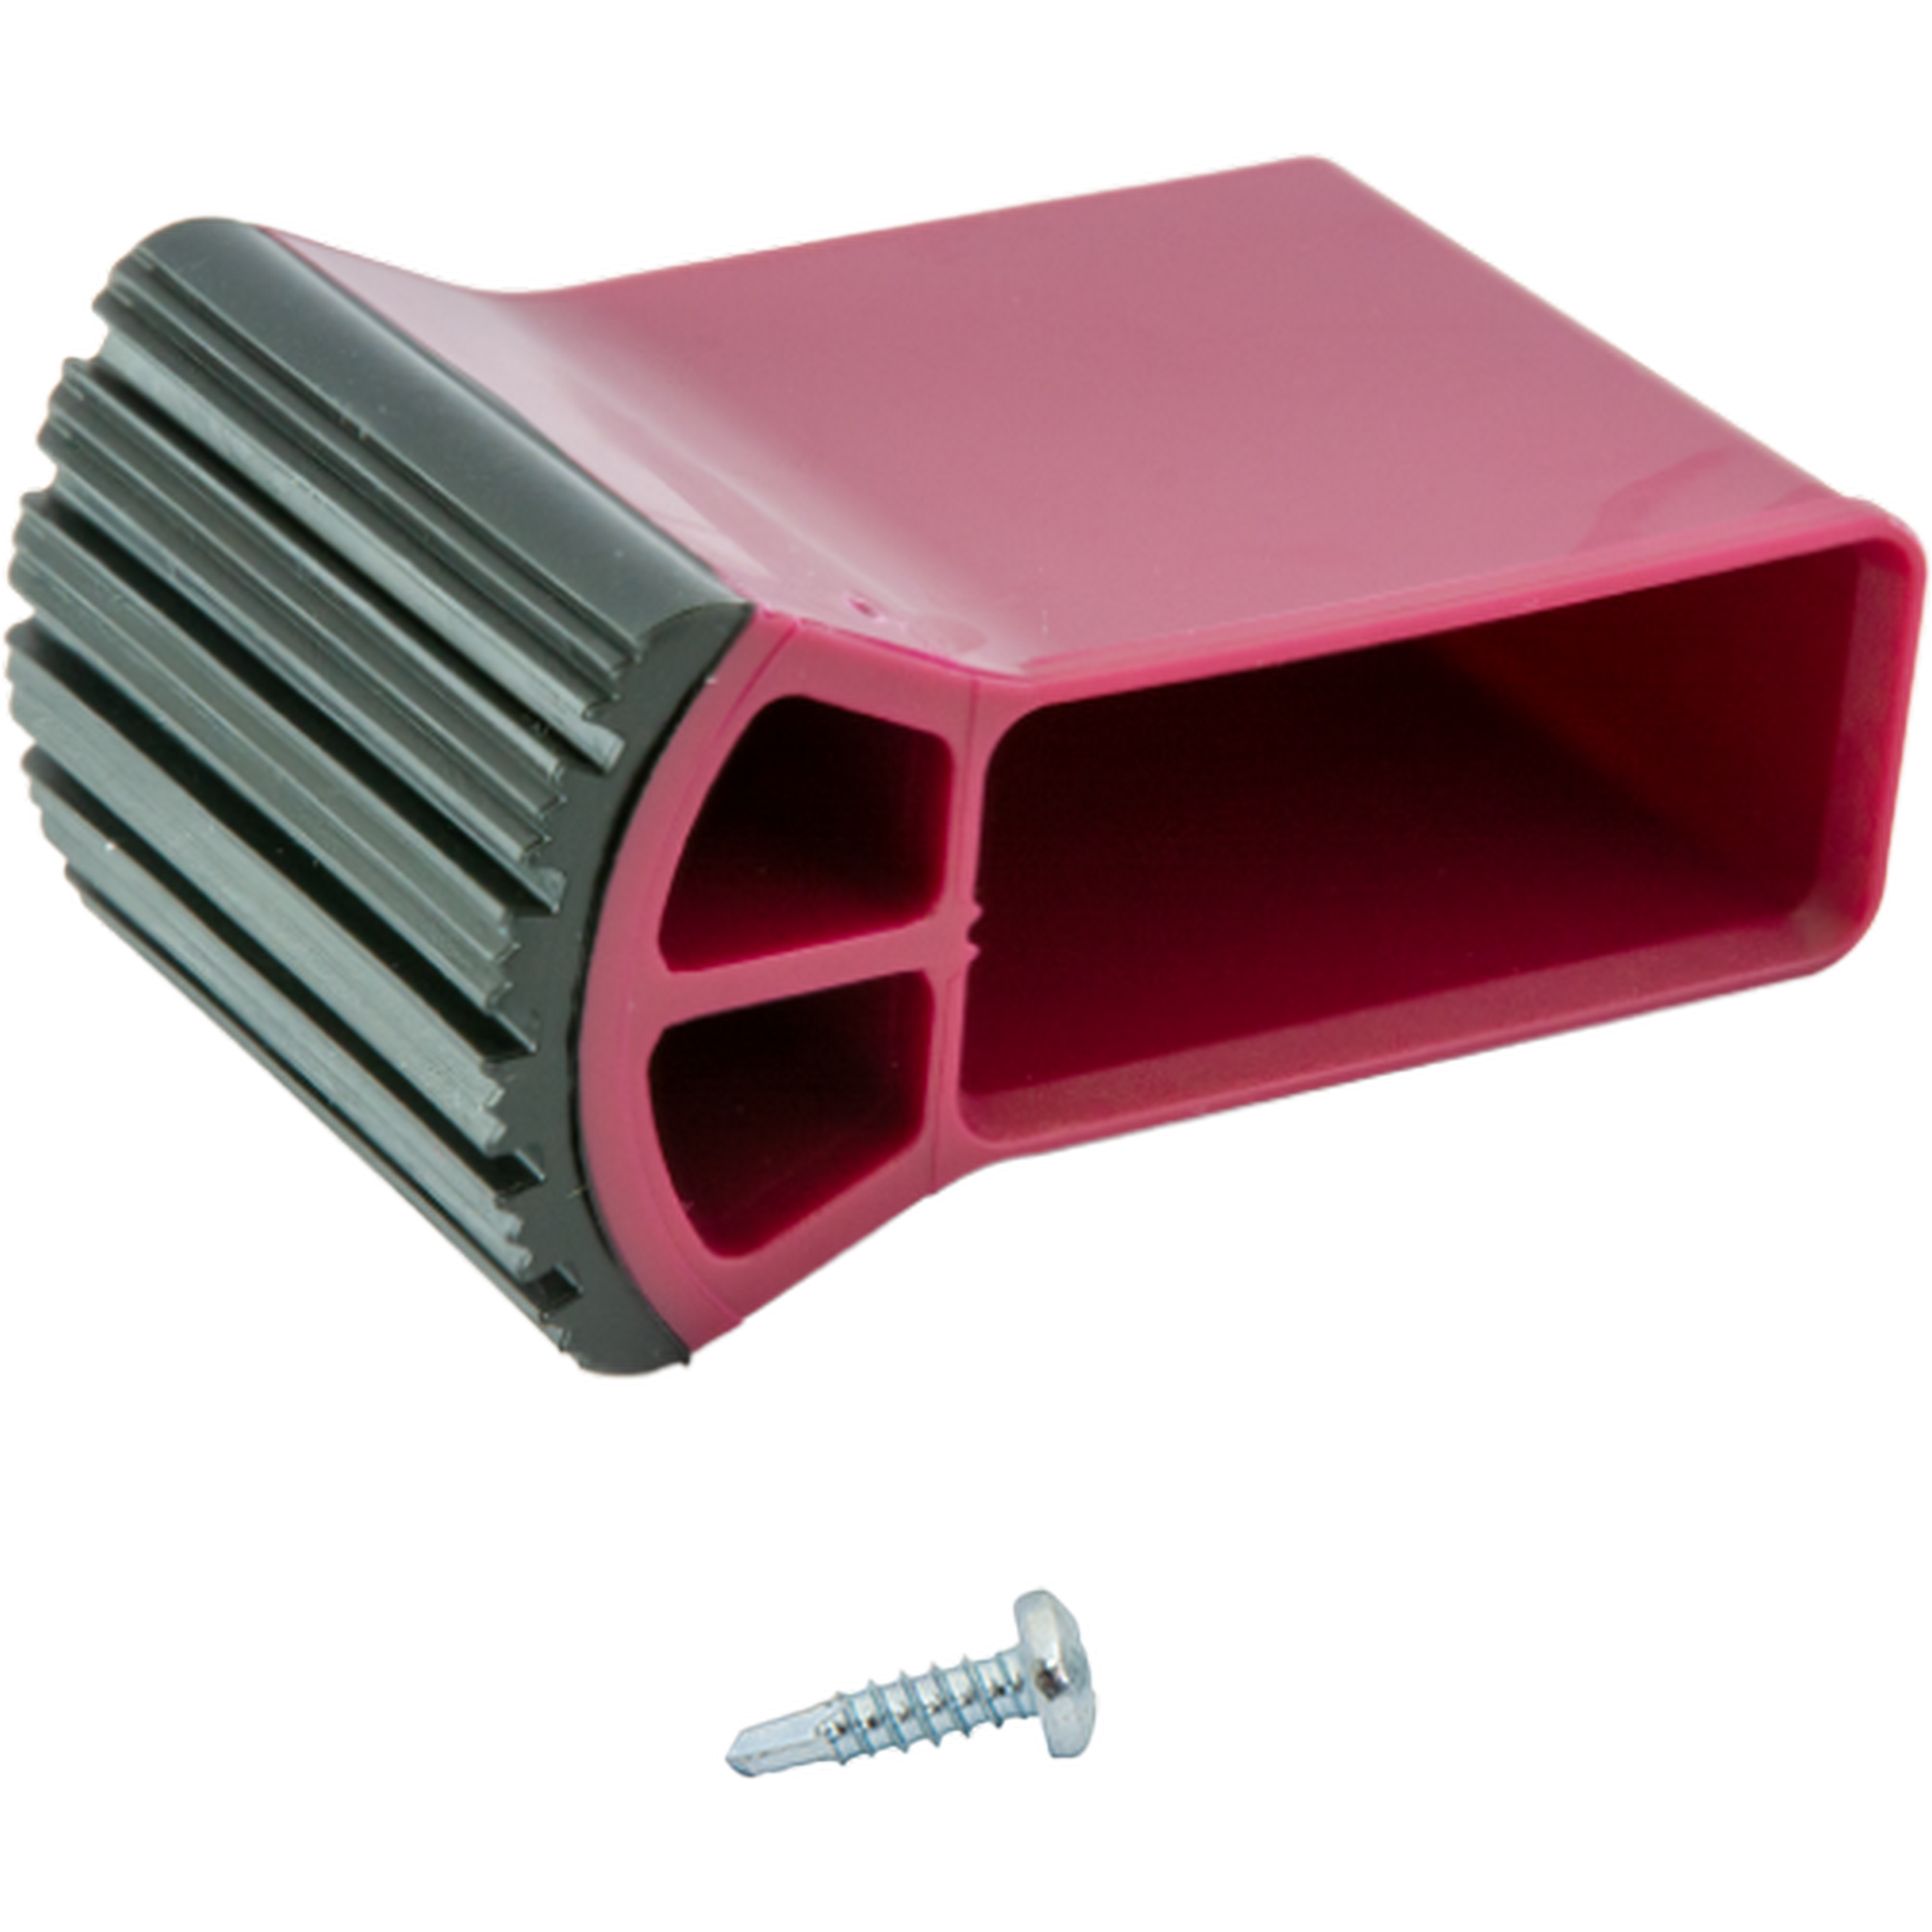 Traversenfußkappe für Stufenleitern schwarz/violett 50 x 20 mm + product picture